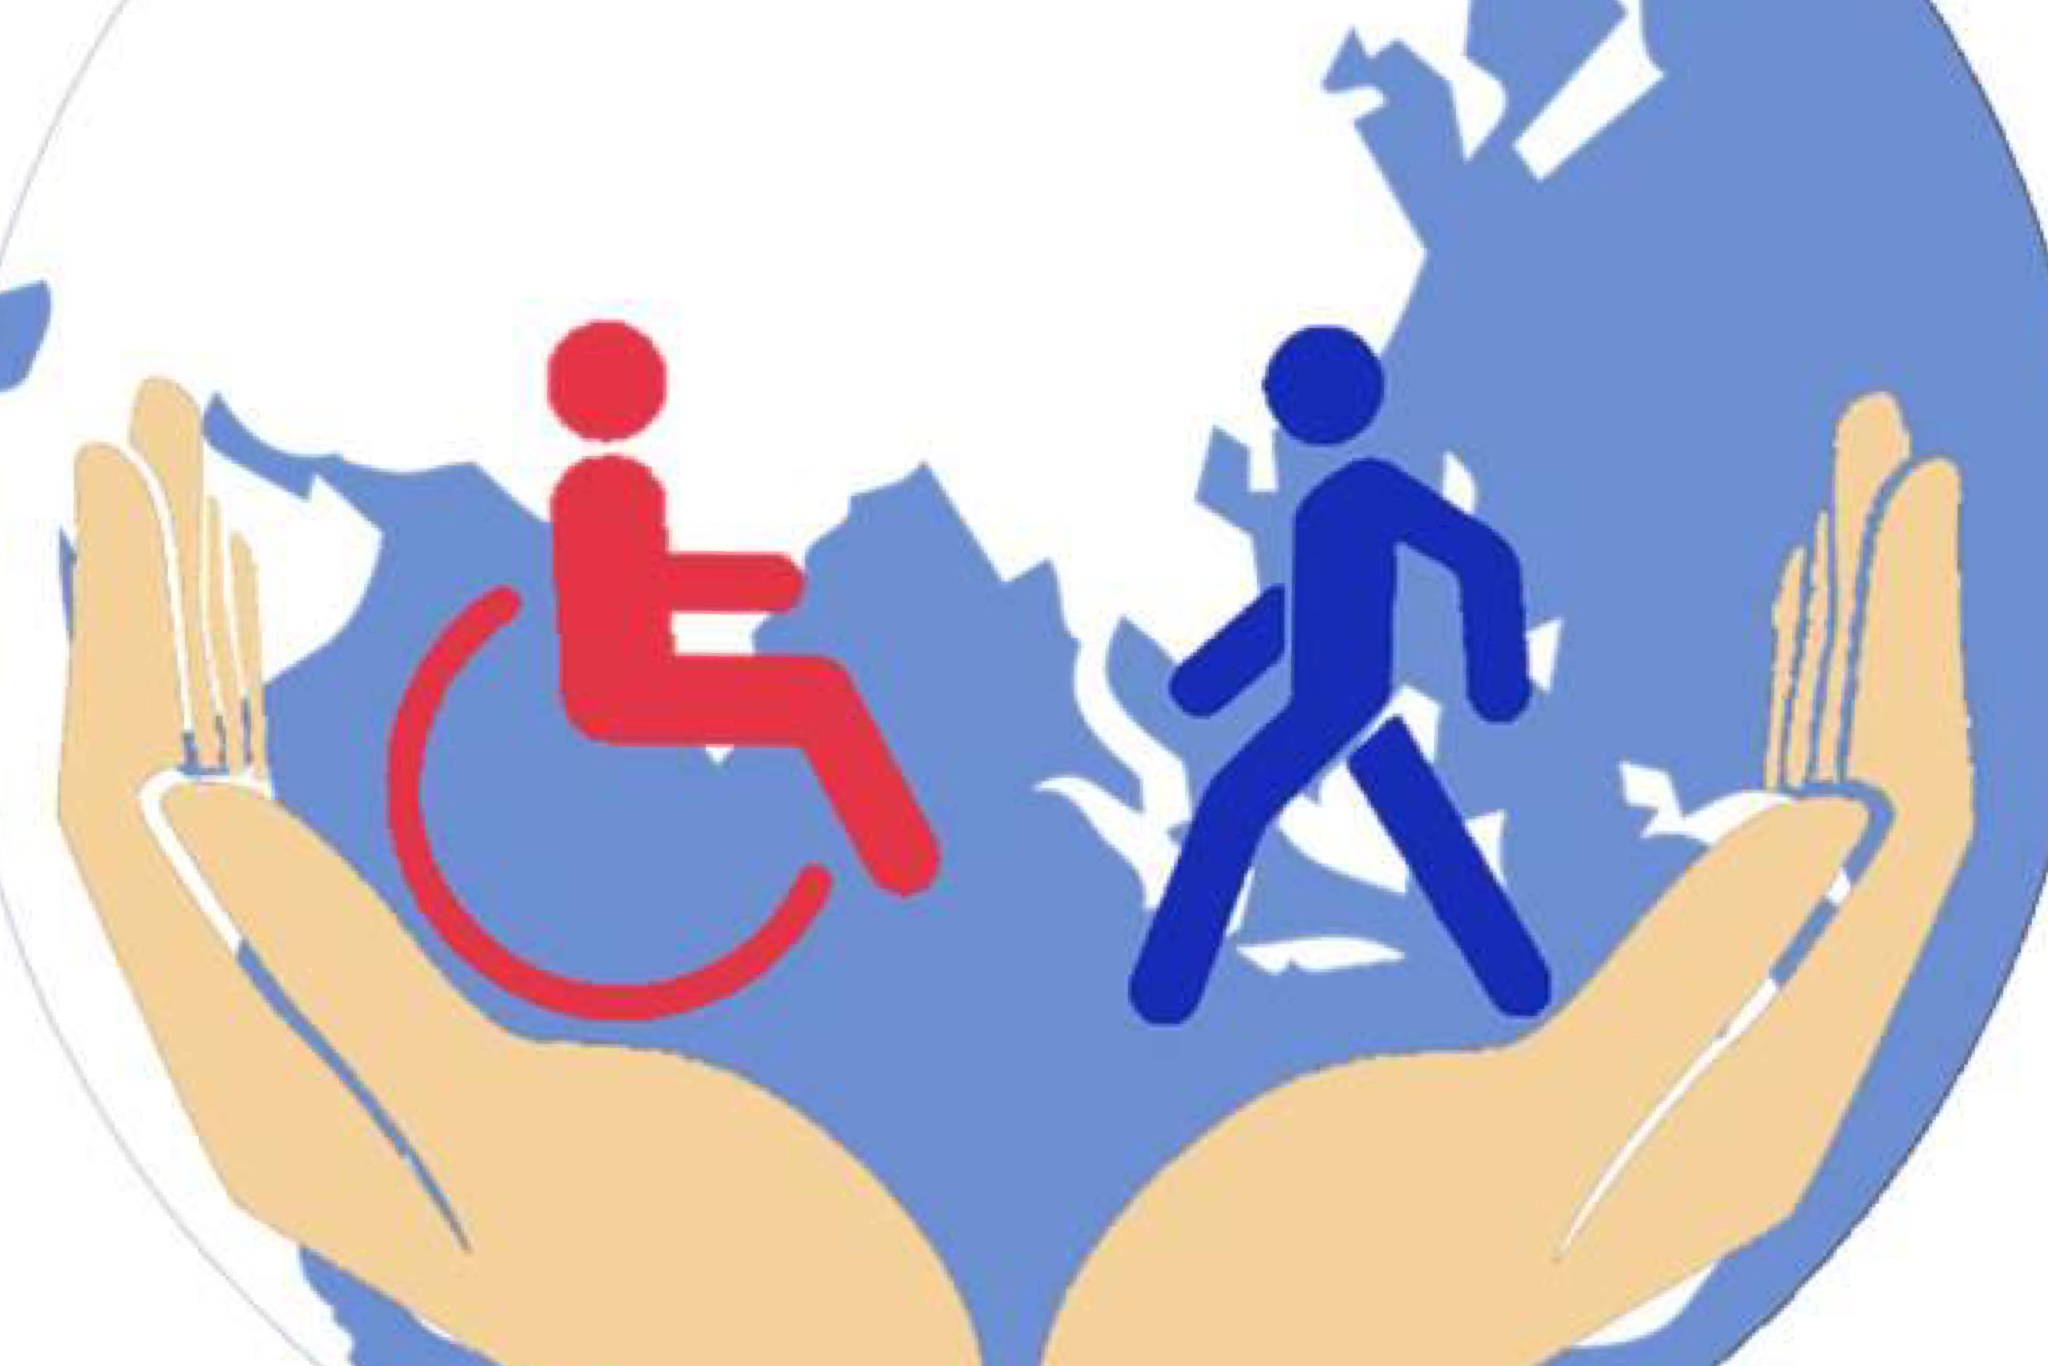 Поддержка социальной активности. Защита инвалидов. Соц защита инвалидов. Инвалиды в социуме. Социальная защита людей с ограниченными возможностями.